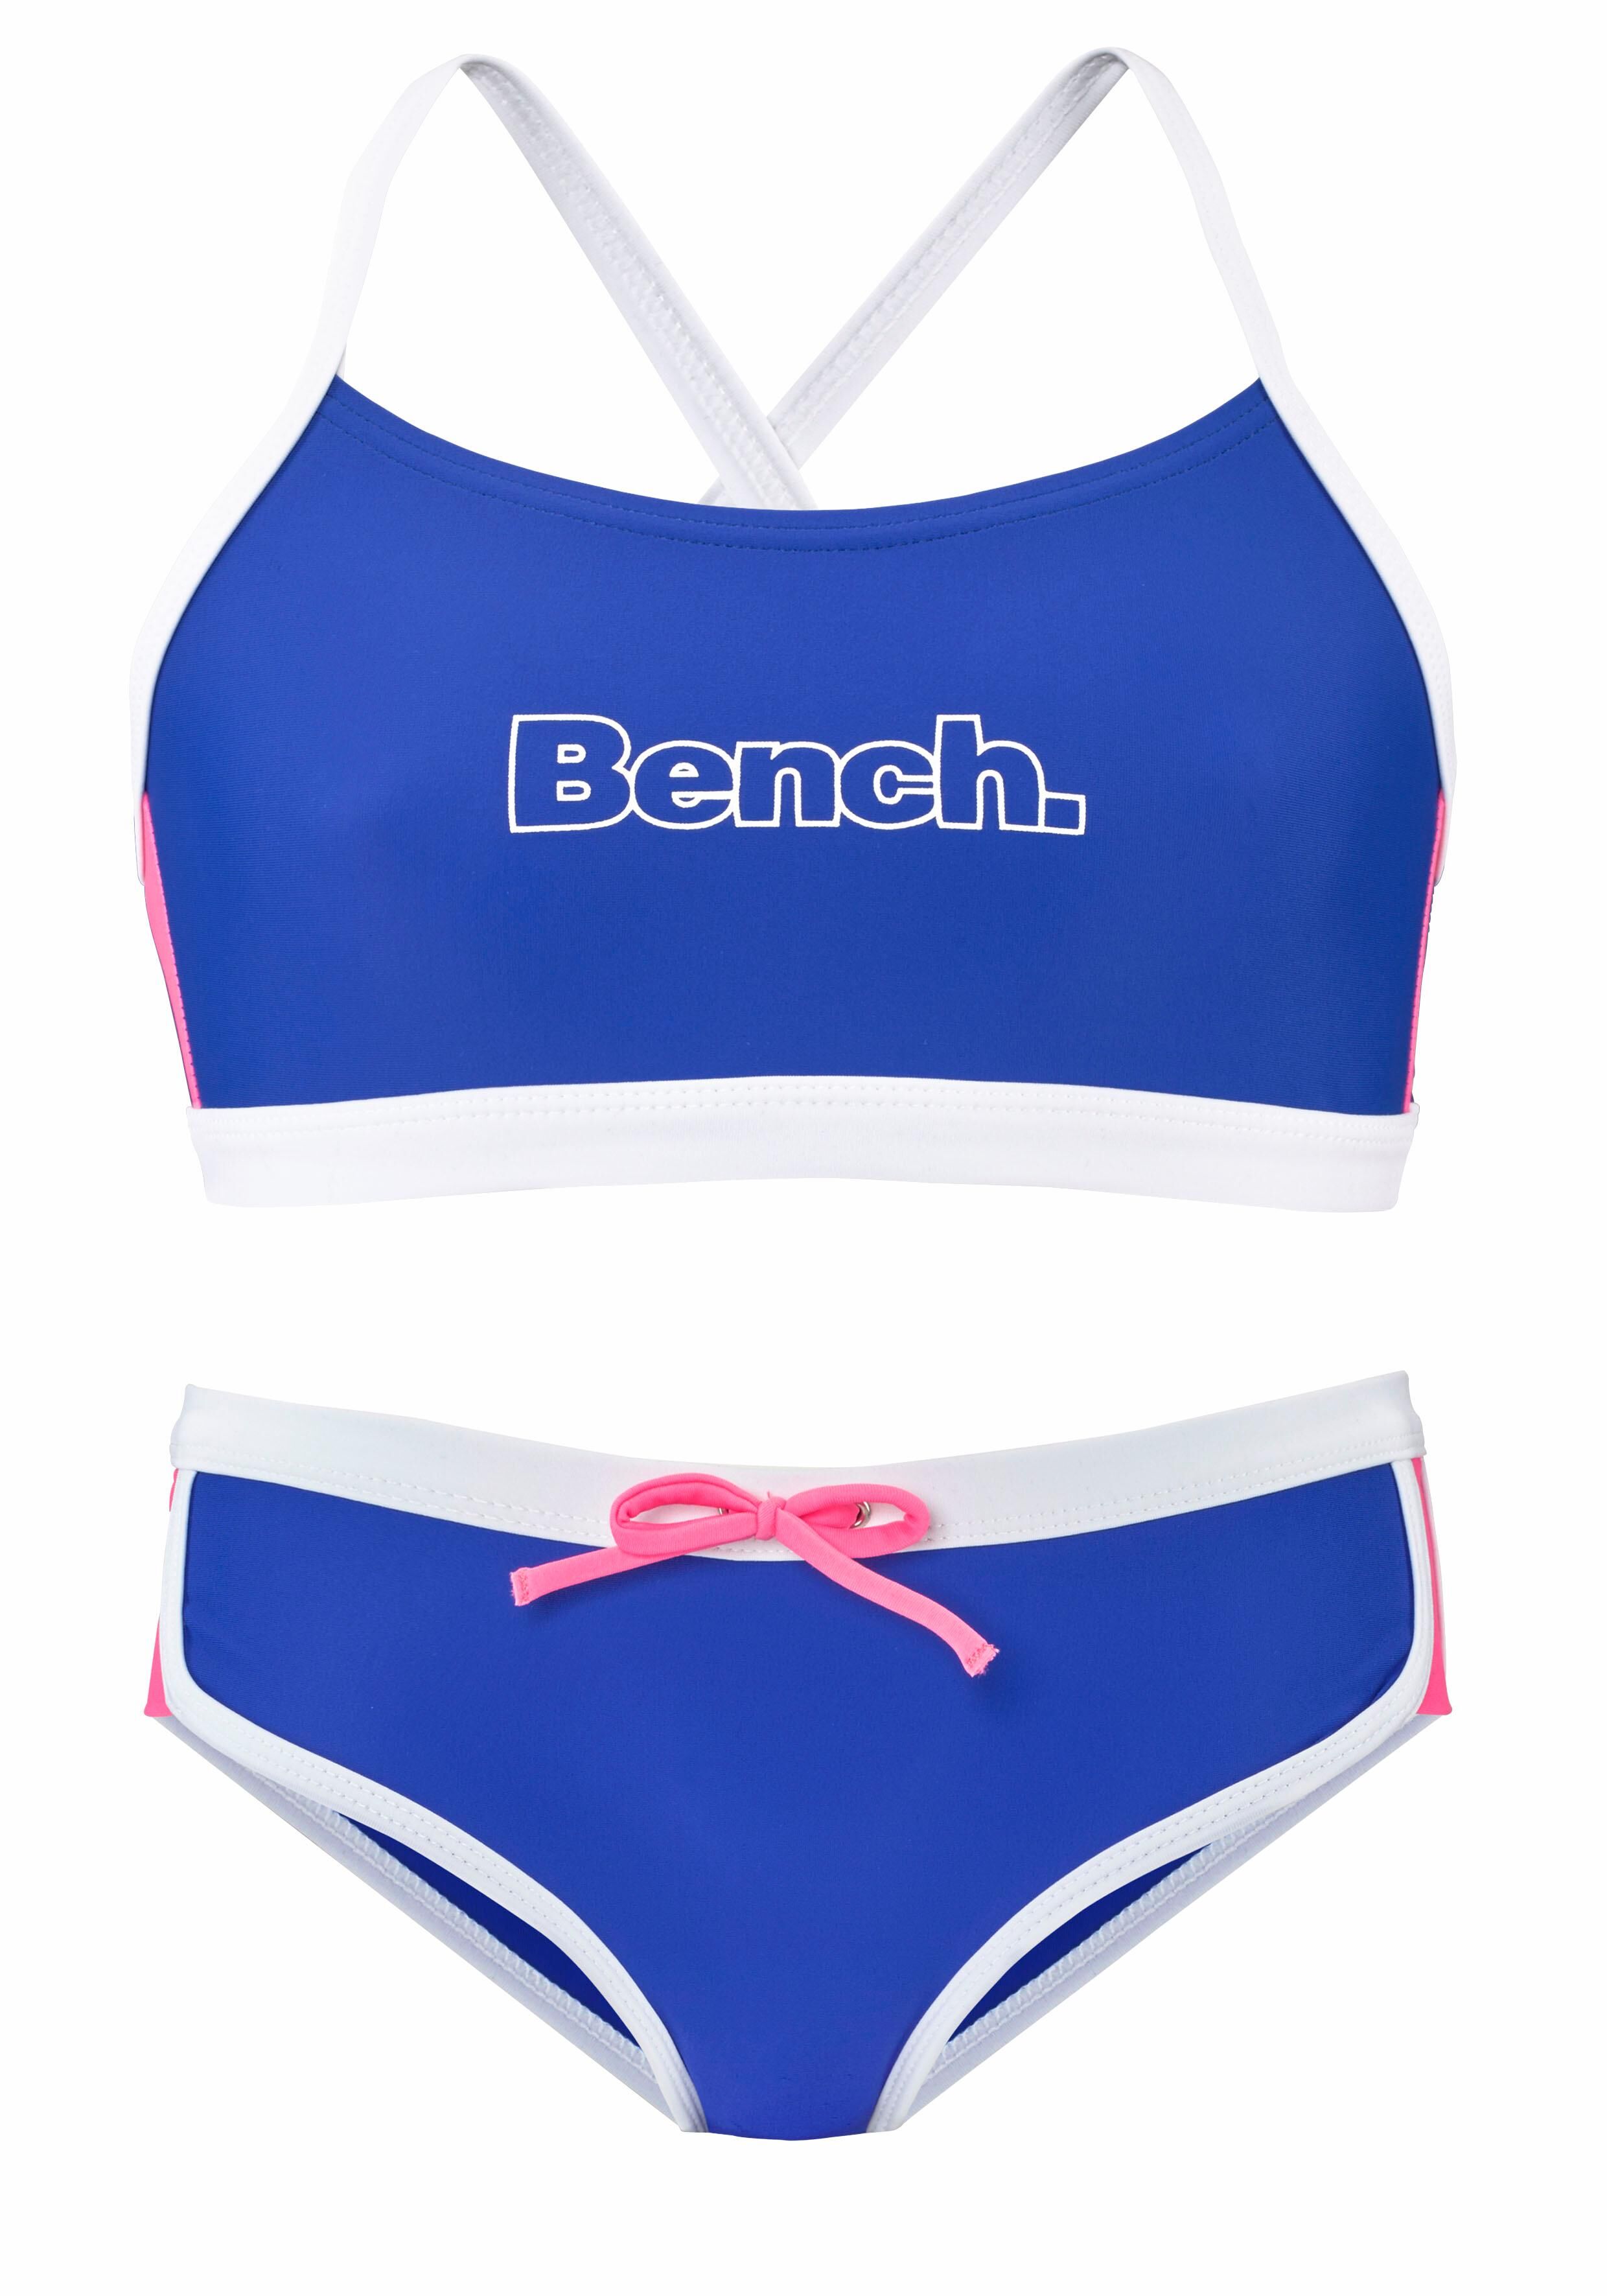 Bench. Bustier-Bikini, mit Kontrastdetails blau  122/128 134/140 146/152 158/164 170/176